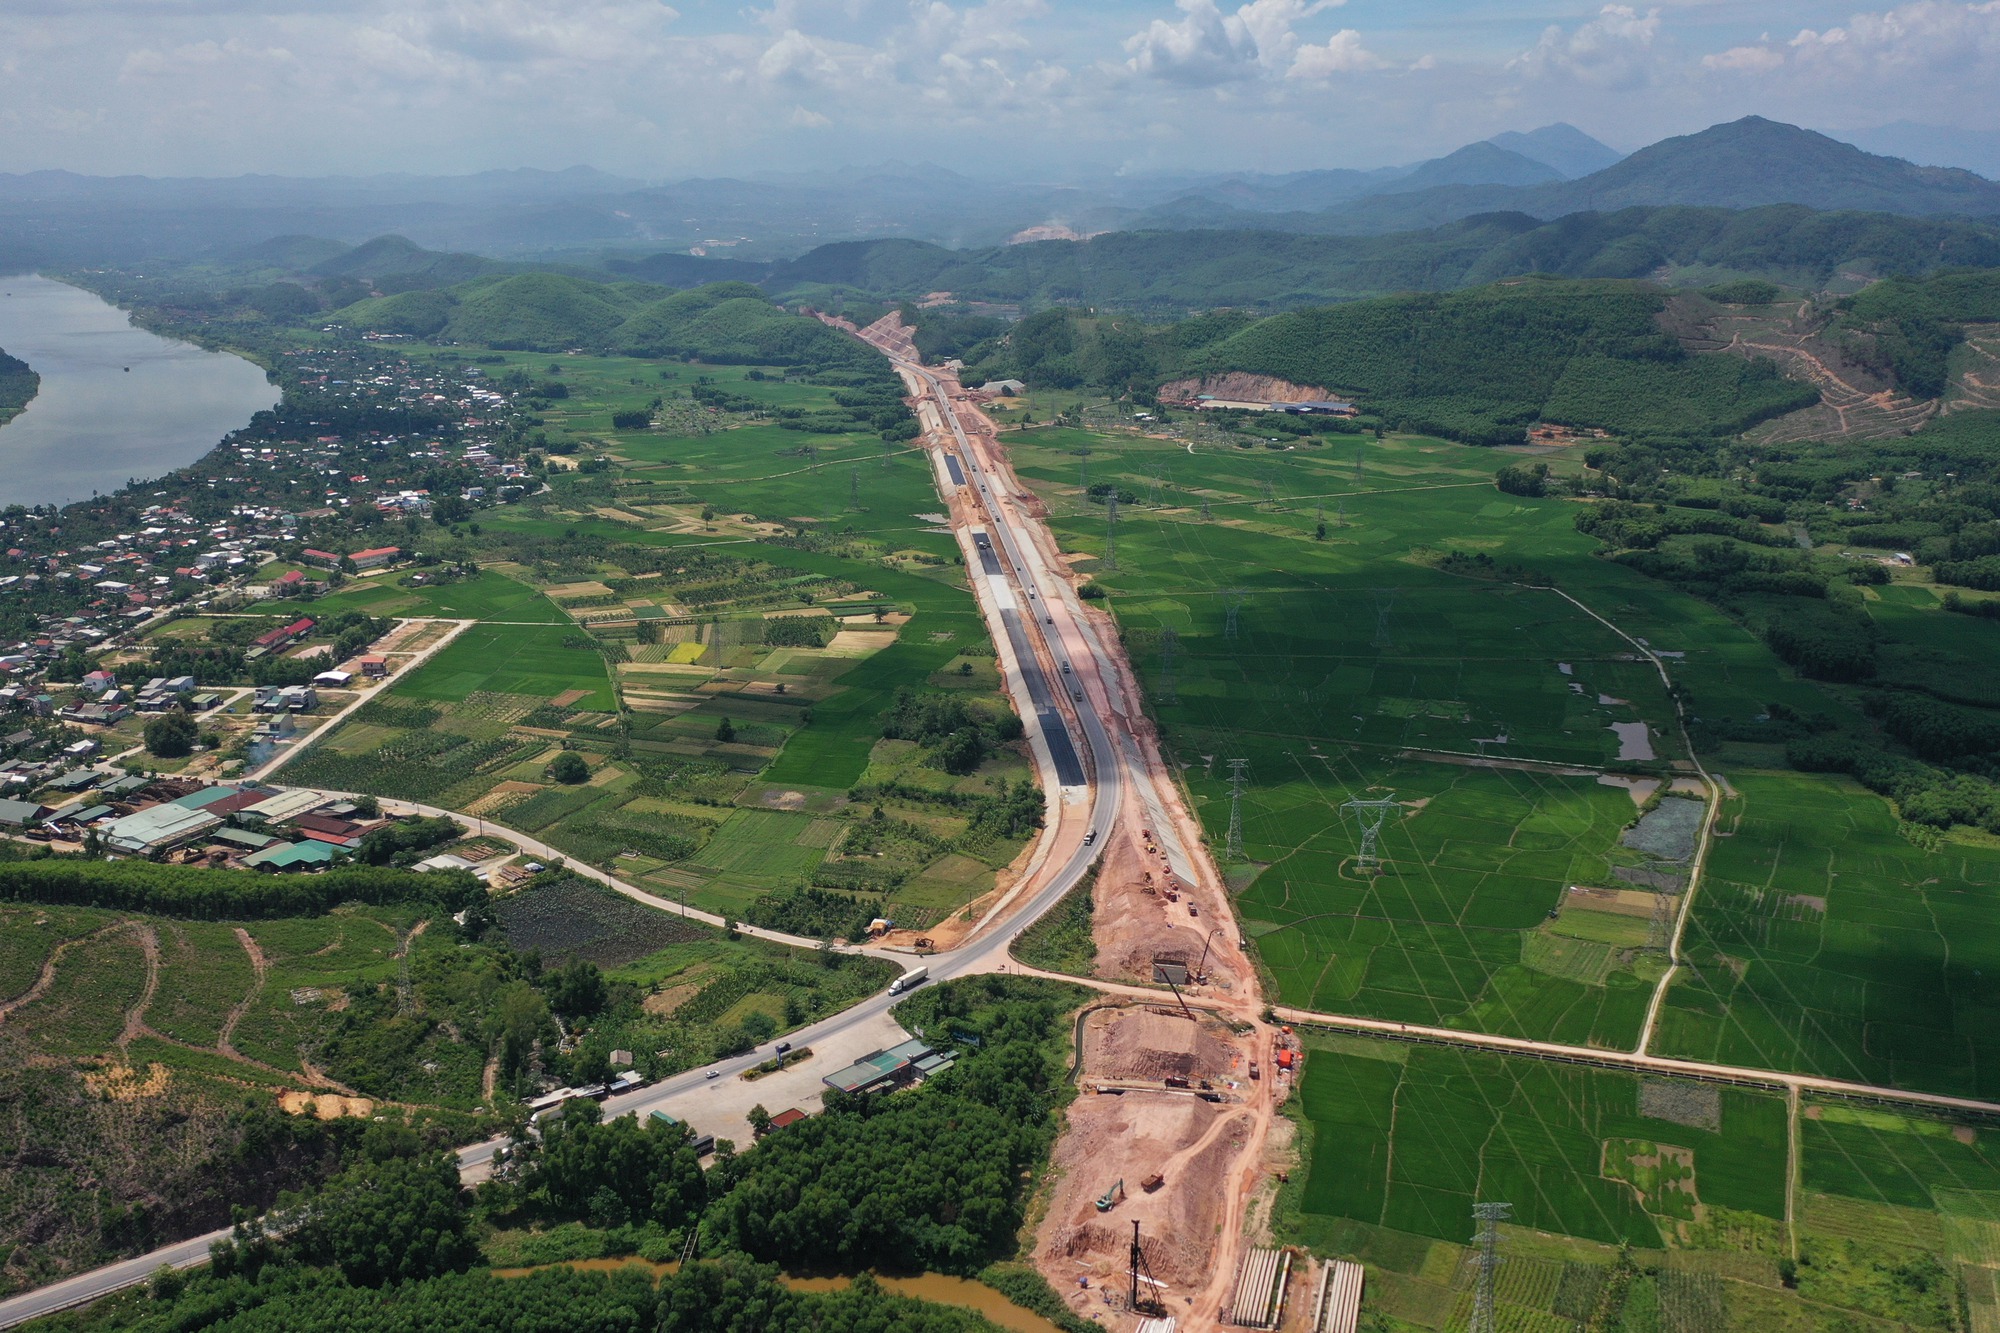 Hình ảnh cao tốc Cam Lộ - La Sơn
Hình ảnh của tuyến cao tốc Cam Lộ - La Sơn là một trong những cảnh đẹp đặc trưng của miền Trung nước ta, với những cảnh quan đồi núi tuyệt đẹp và cuộc sống bình yên của người dân trong vùng. Những hình ảnh này sẽ khiến bạn ngỡ ngàng và yêu thương hơn với đất nước Việt Nam của chúng ta.